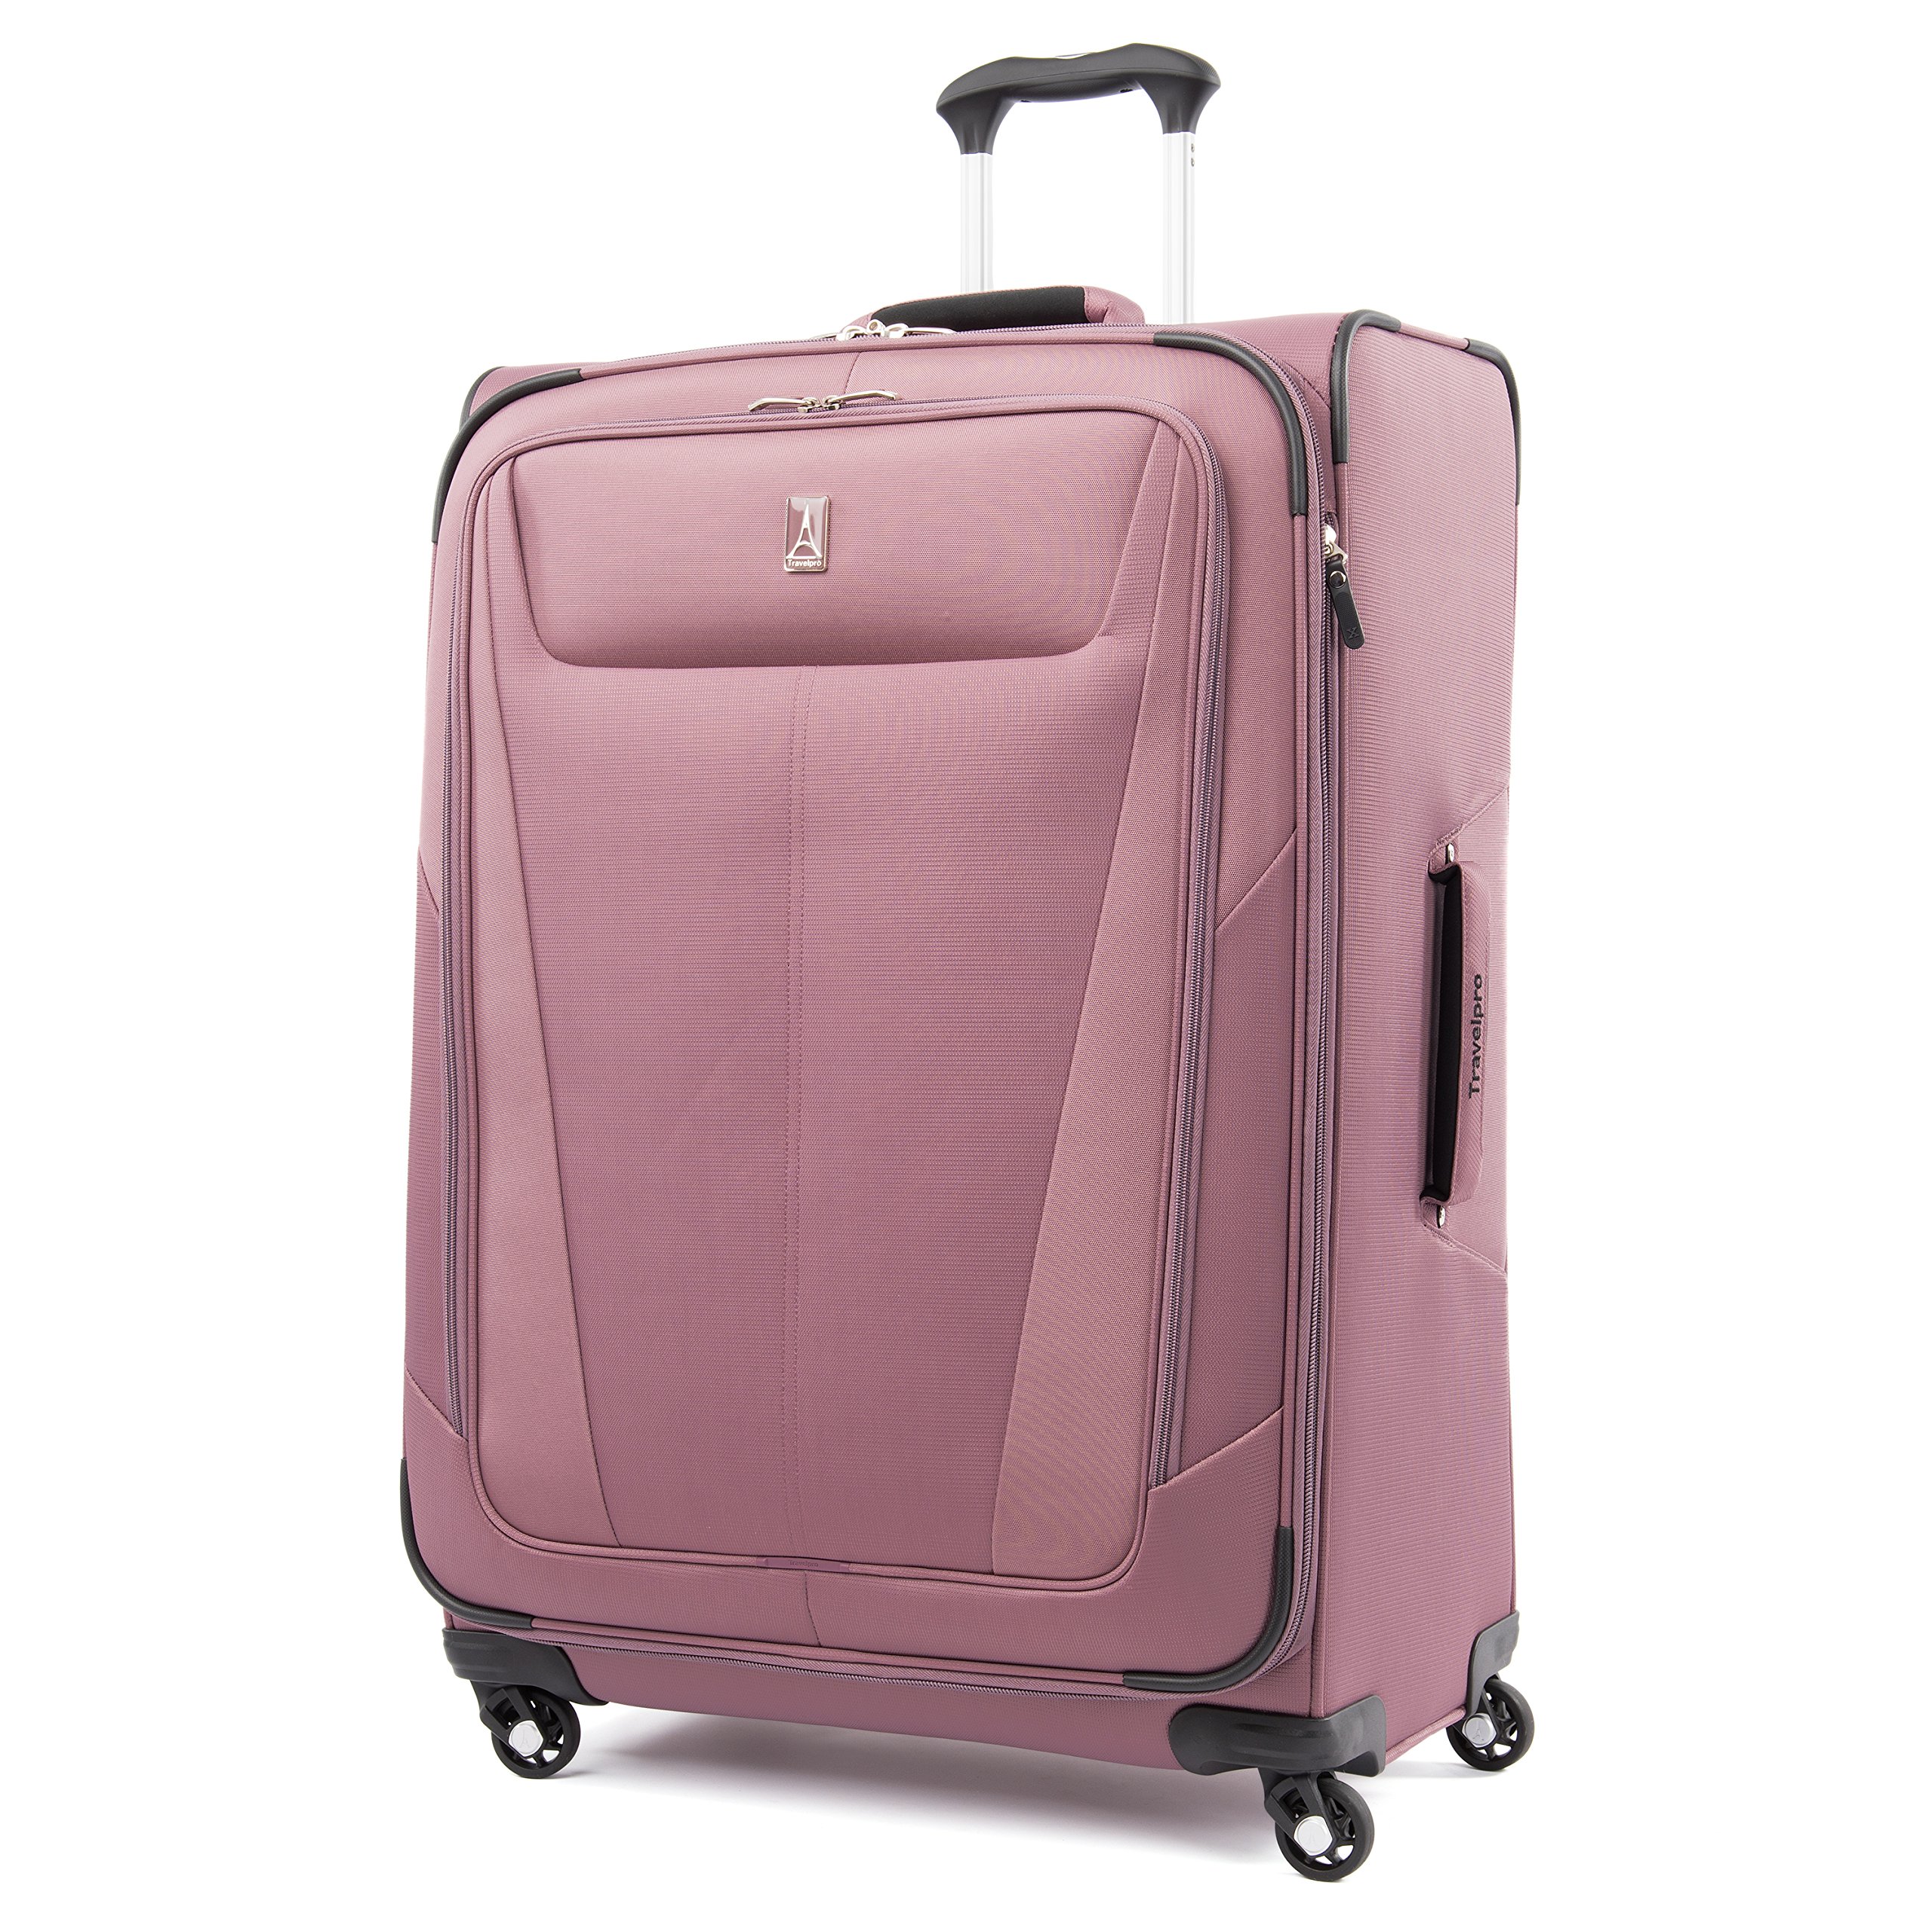 Travelpro Maxlite 5-Softside Expandable Spinner Wheel Luggage | eBay